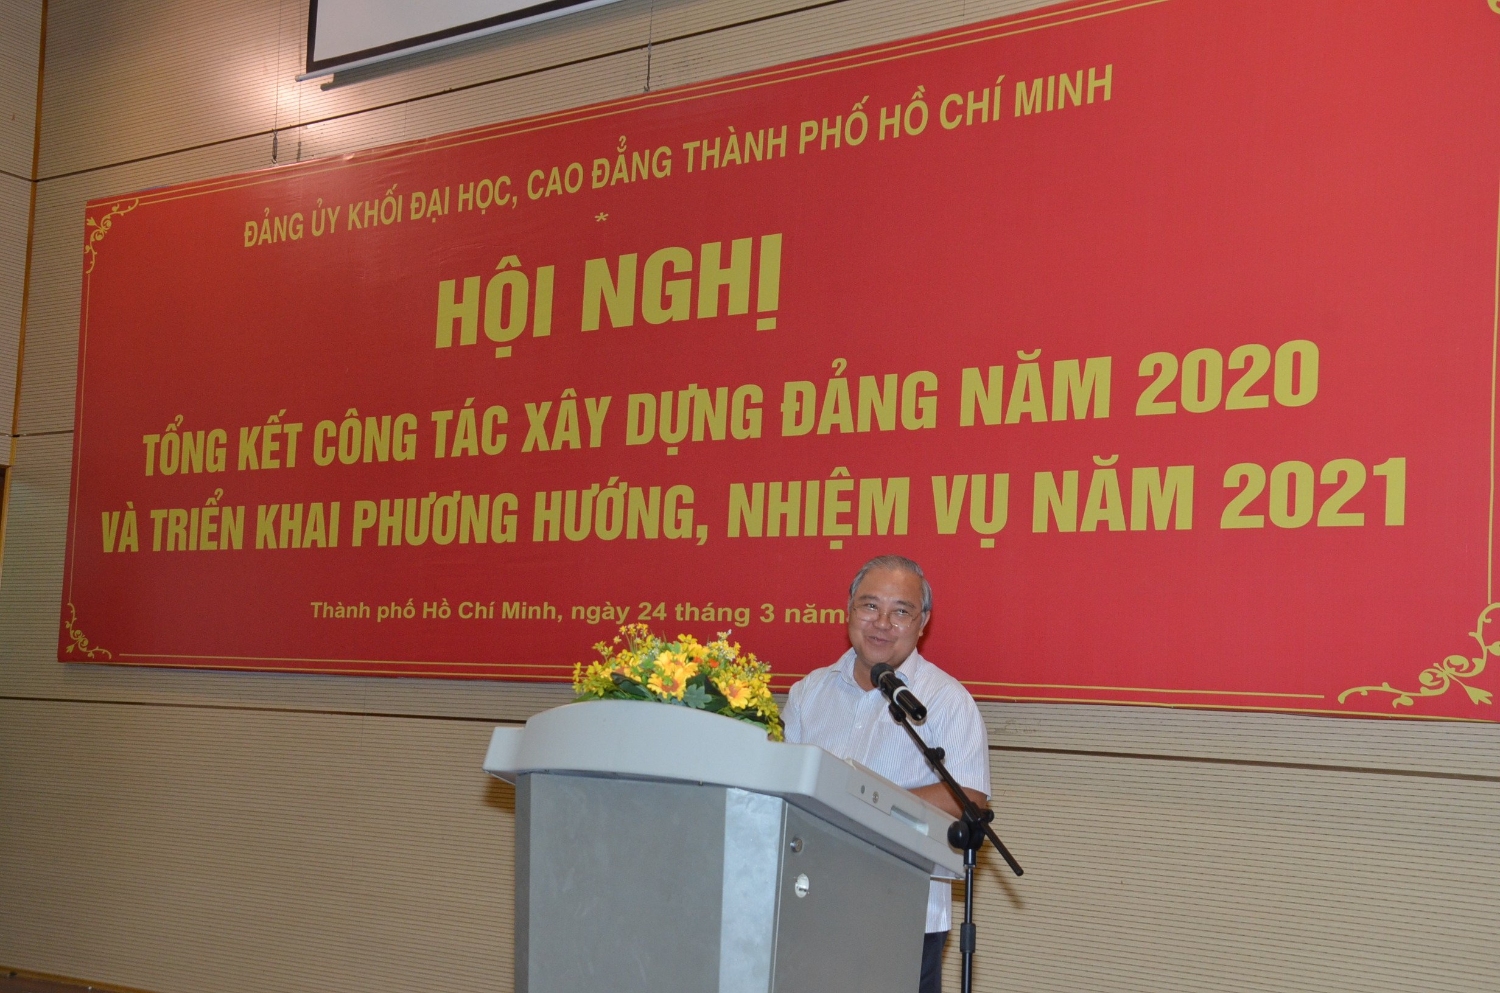 4.	Đồng chí Võ Văn Tân – Phó Trưởng Ban Tổ chức Thành ủy phát biểu góp ý các nội dung hội nghị